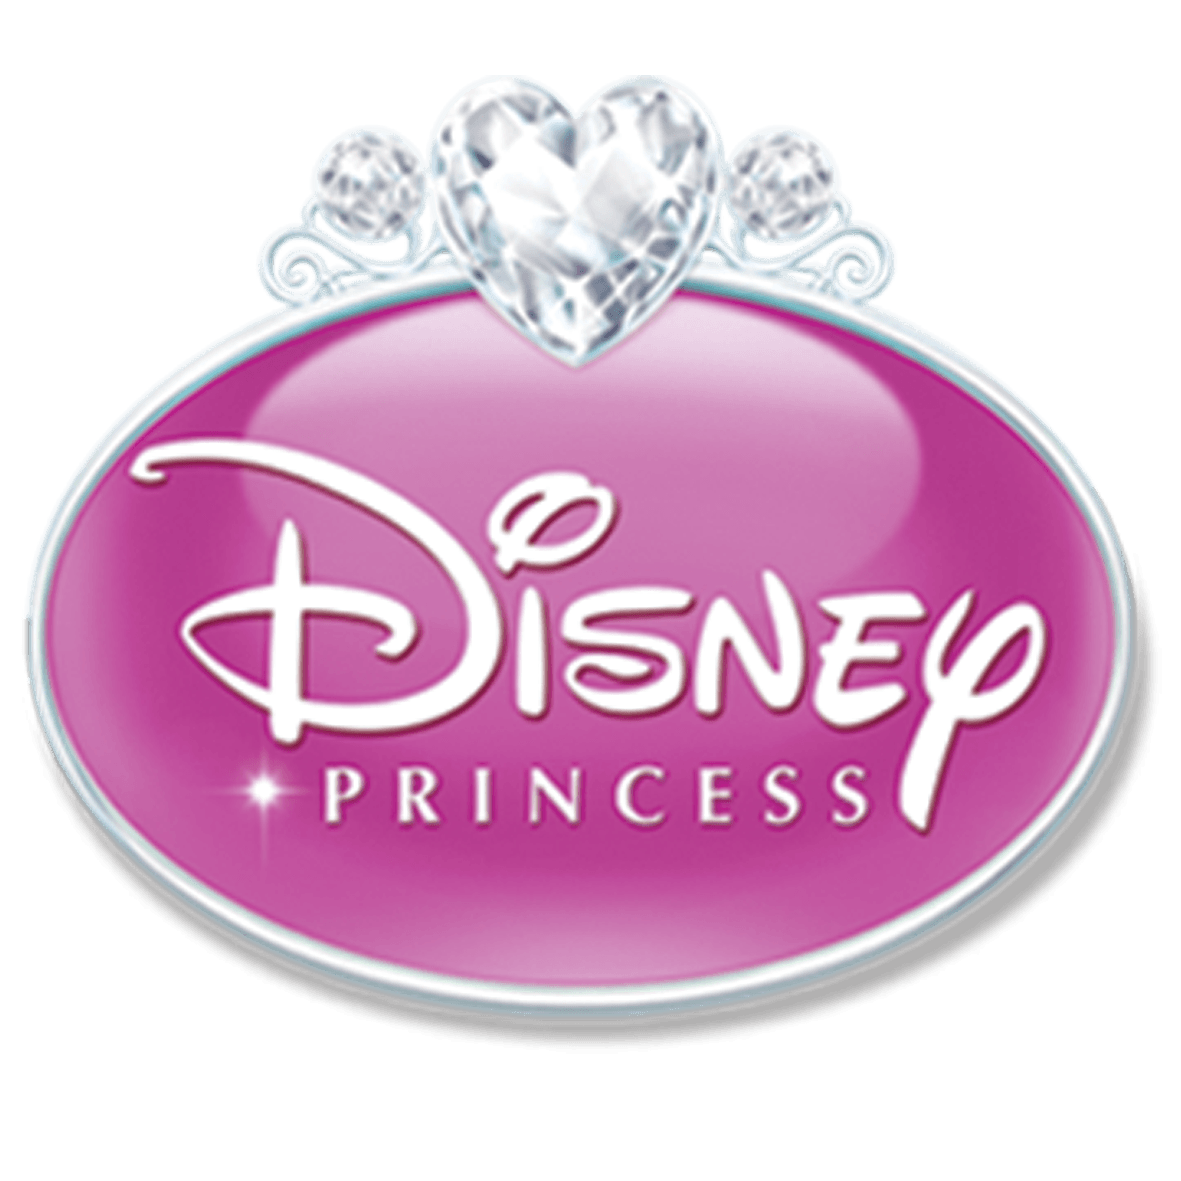 Disney Princess Logo - Disney Princess 2011 logo.png